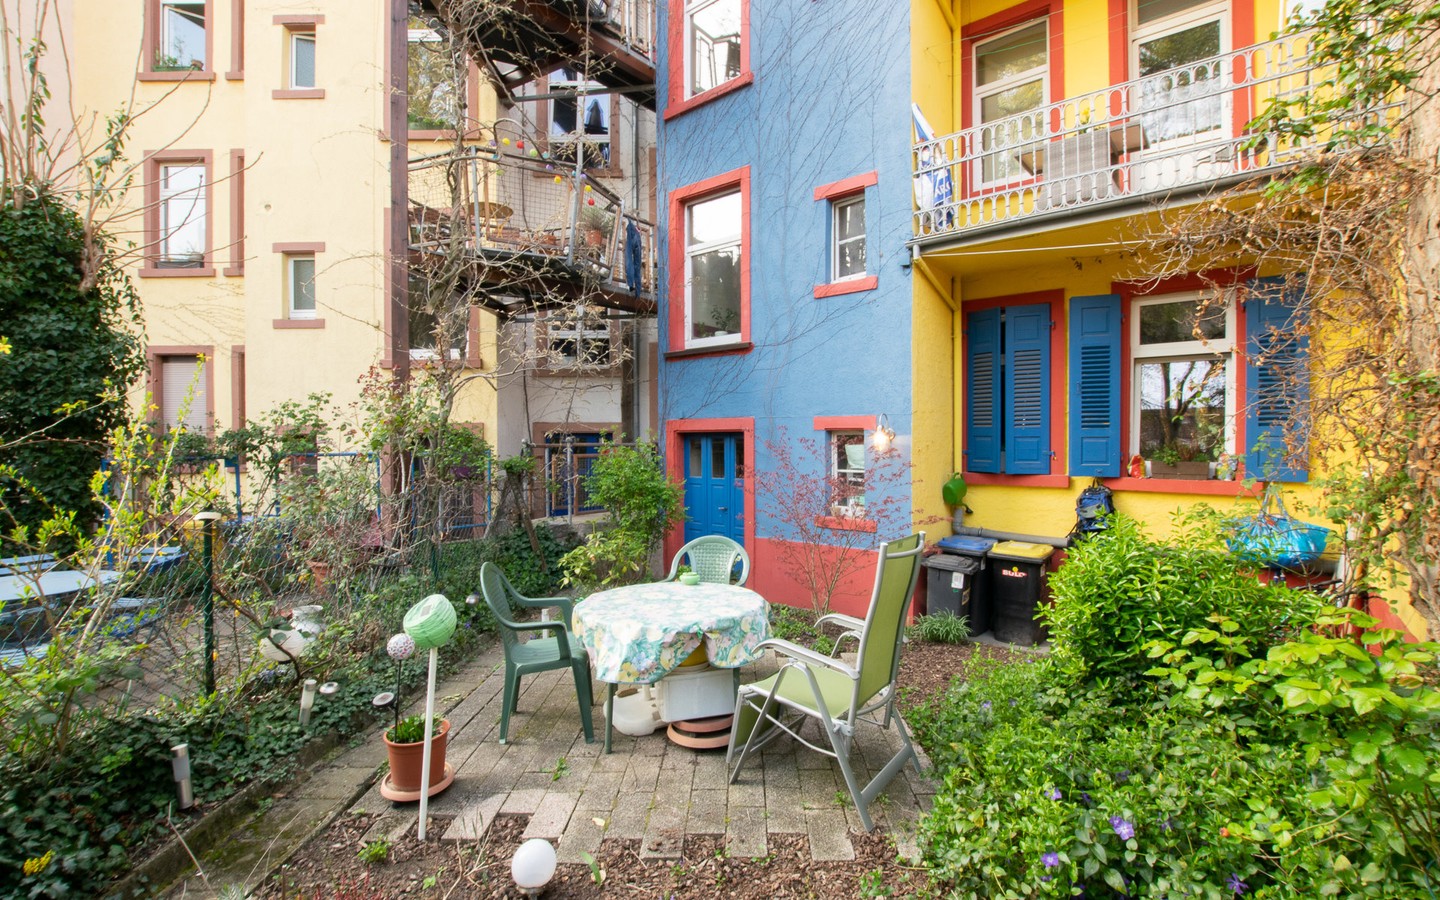 Hausfassade samt Hof - Seltene Gelegenheit: Tolles Mehrfamilienhaus mit Flair in der Weststadt